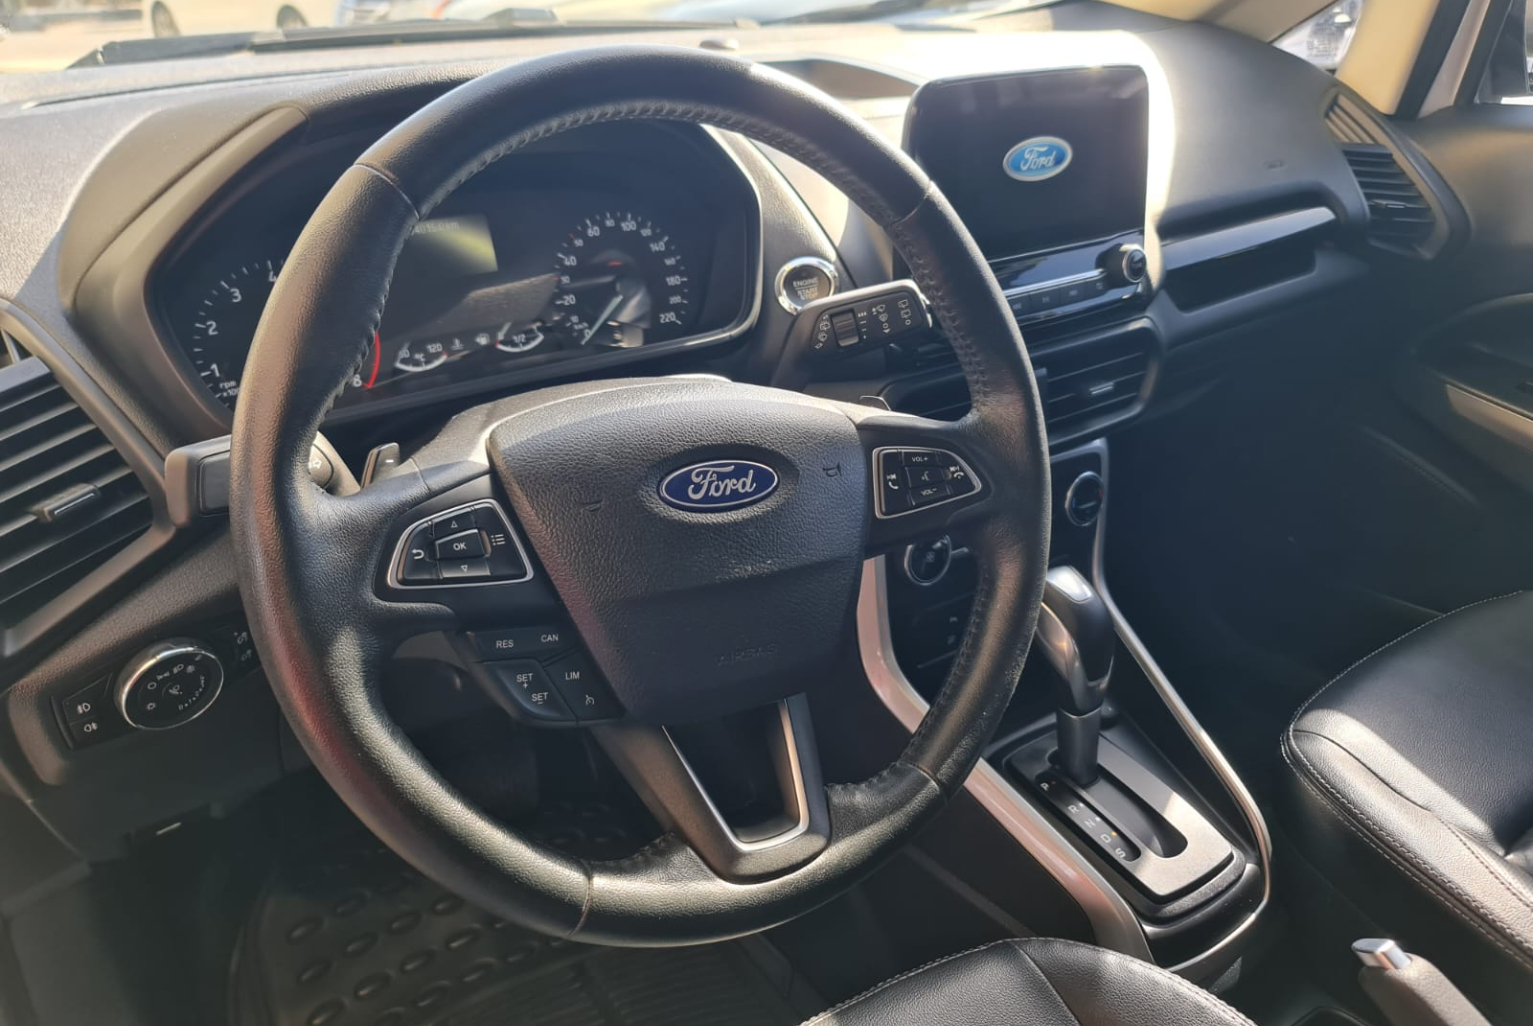 Ford Eco Sport 2018 Automático color Blanco, Imagen #7